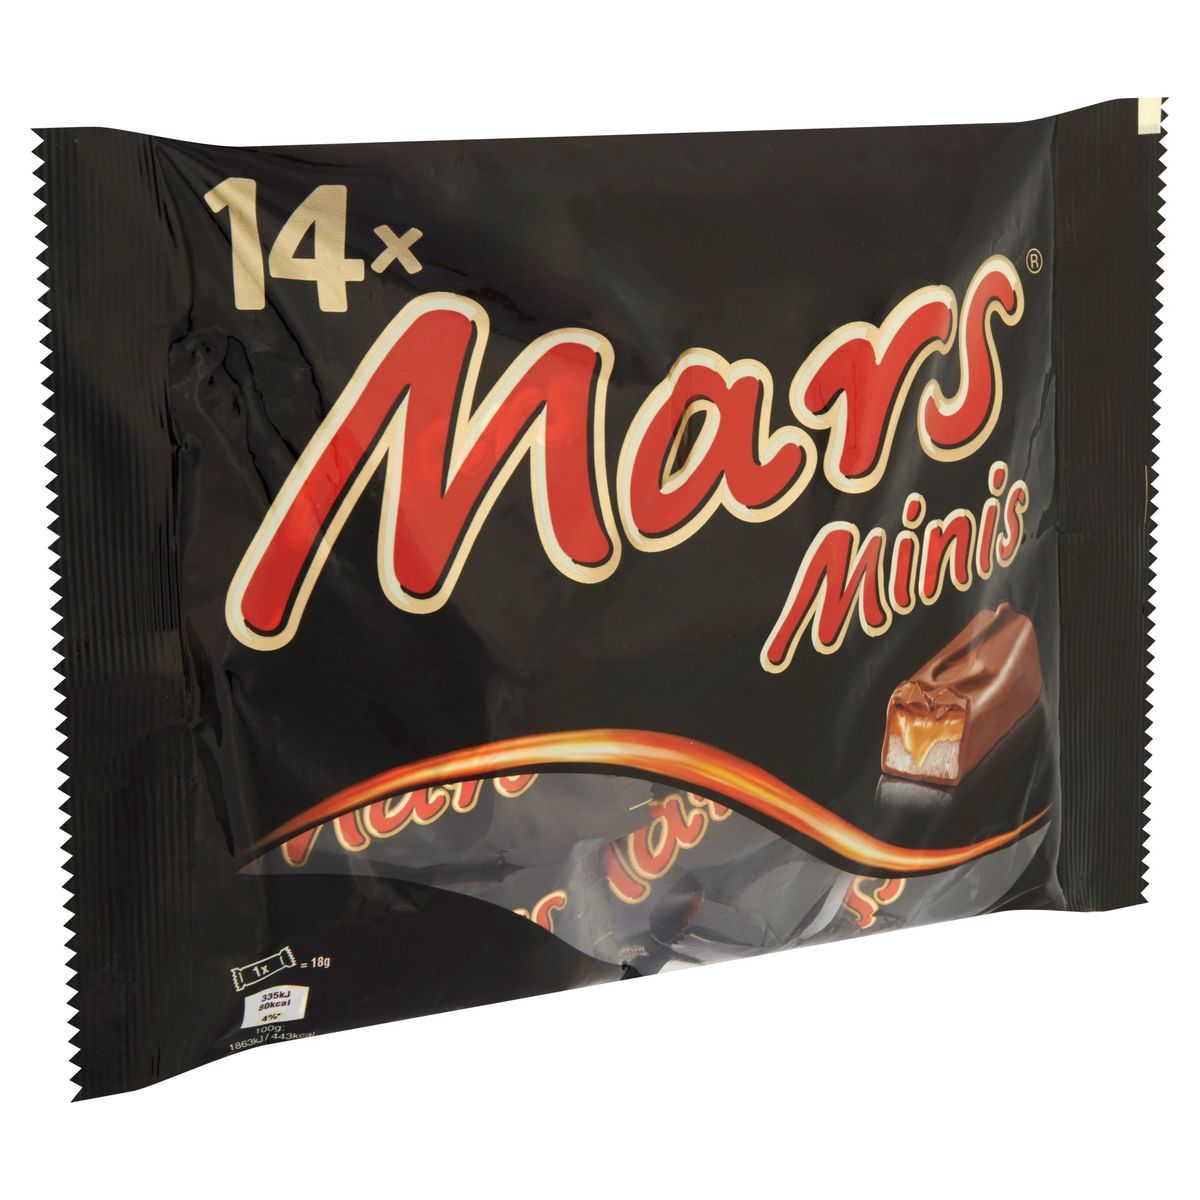 Barres de chocolat Mars mini 227g